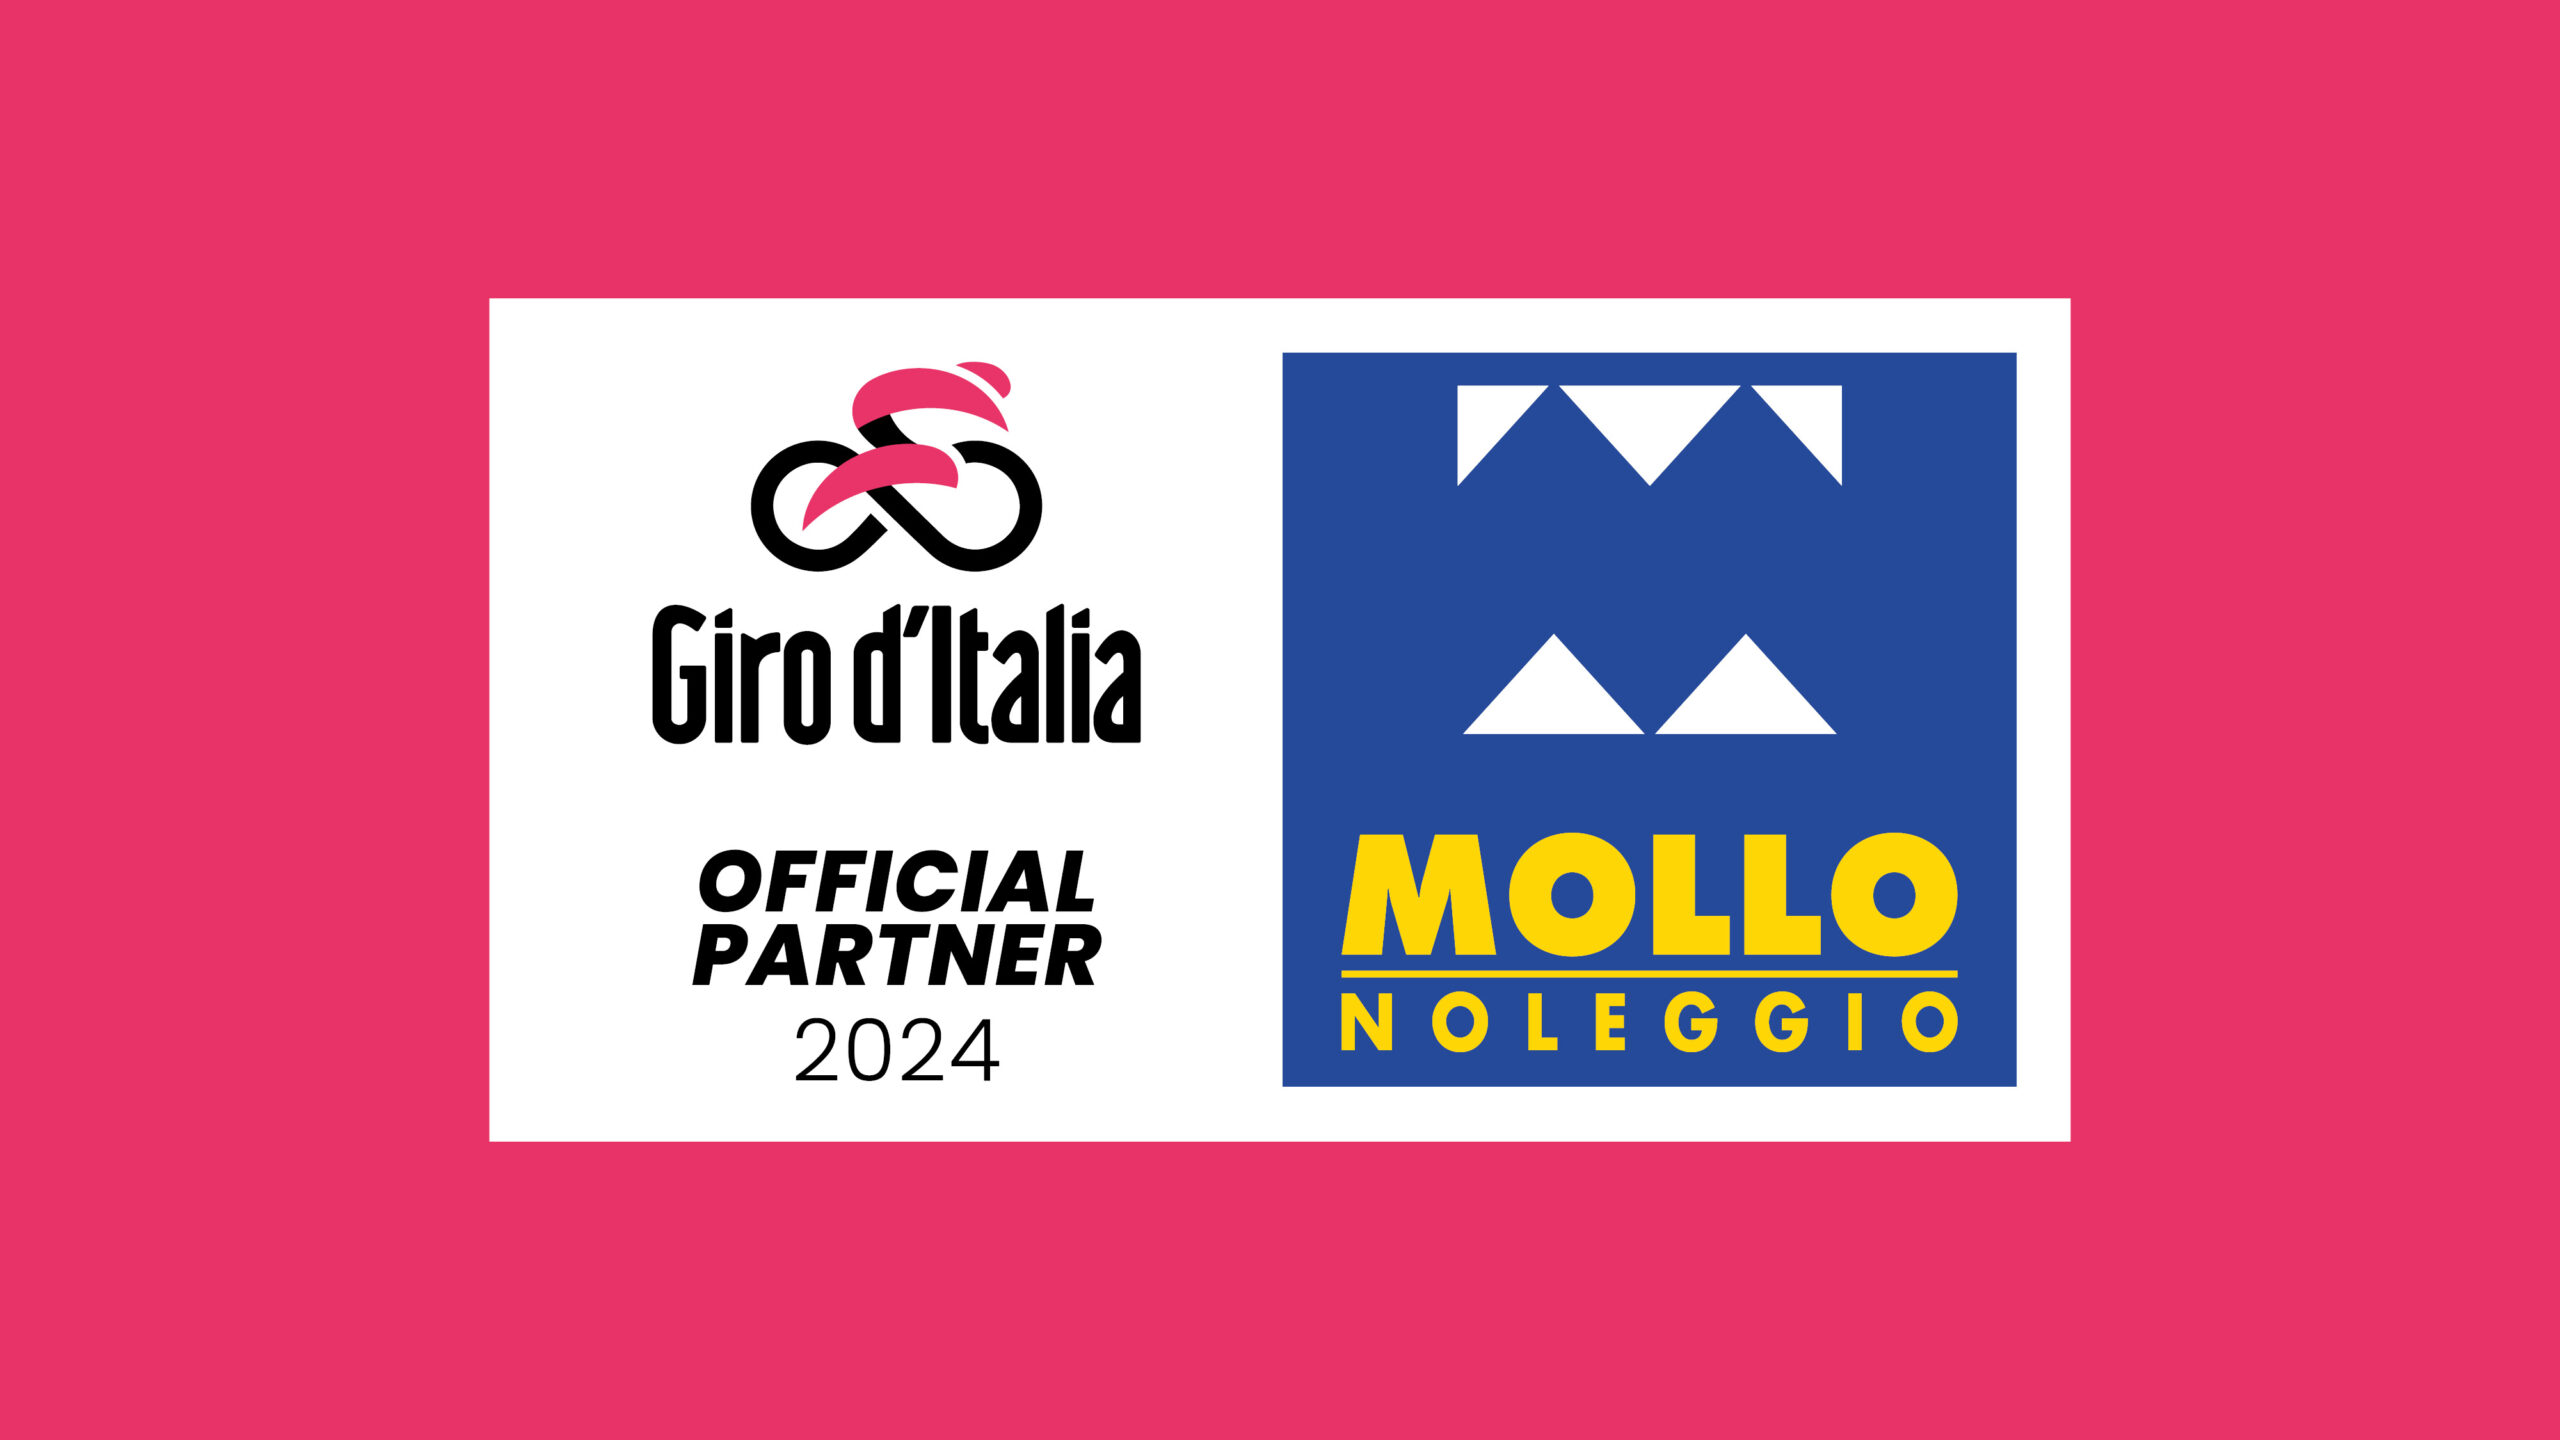 Mollo Noleggio Official Partner Corsa Rosa